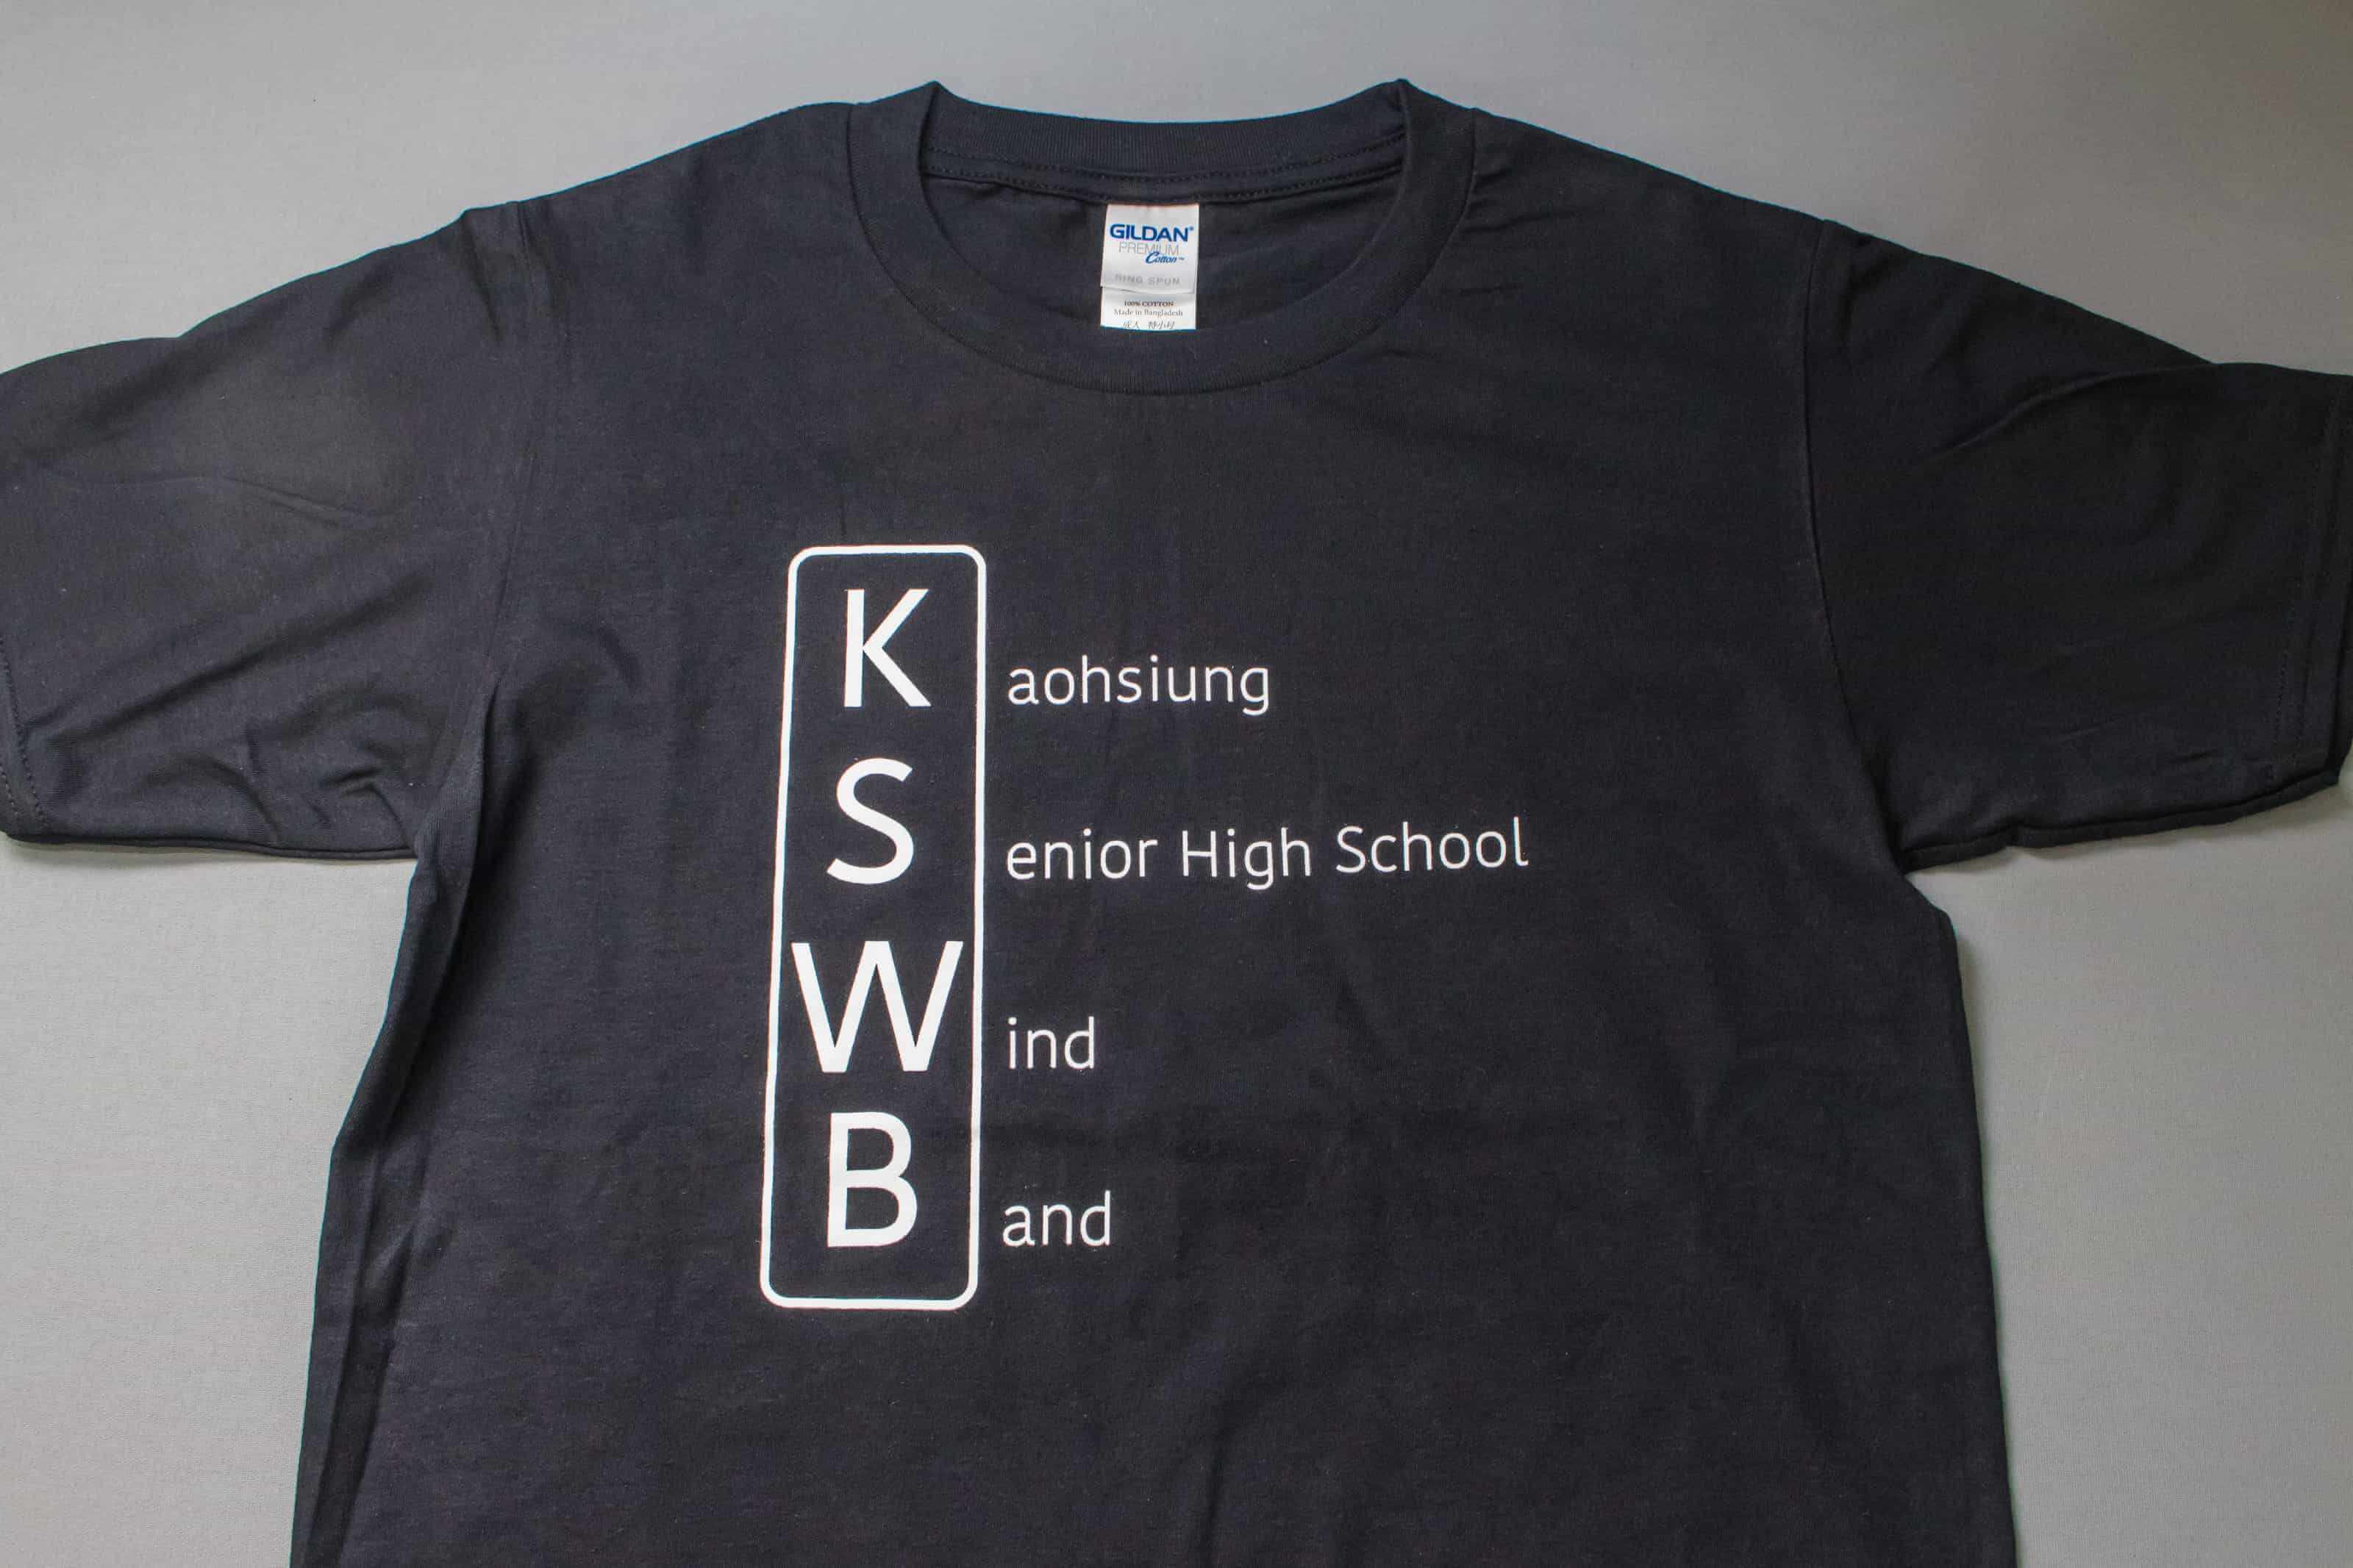 客製化T恤 - KSWB 客製T恤的第1張圖(客製化公司制服、班服製作、團體服製作等示意或作品圖)